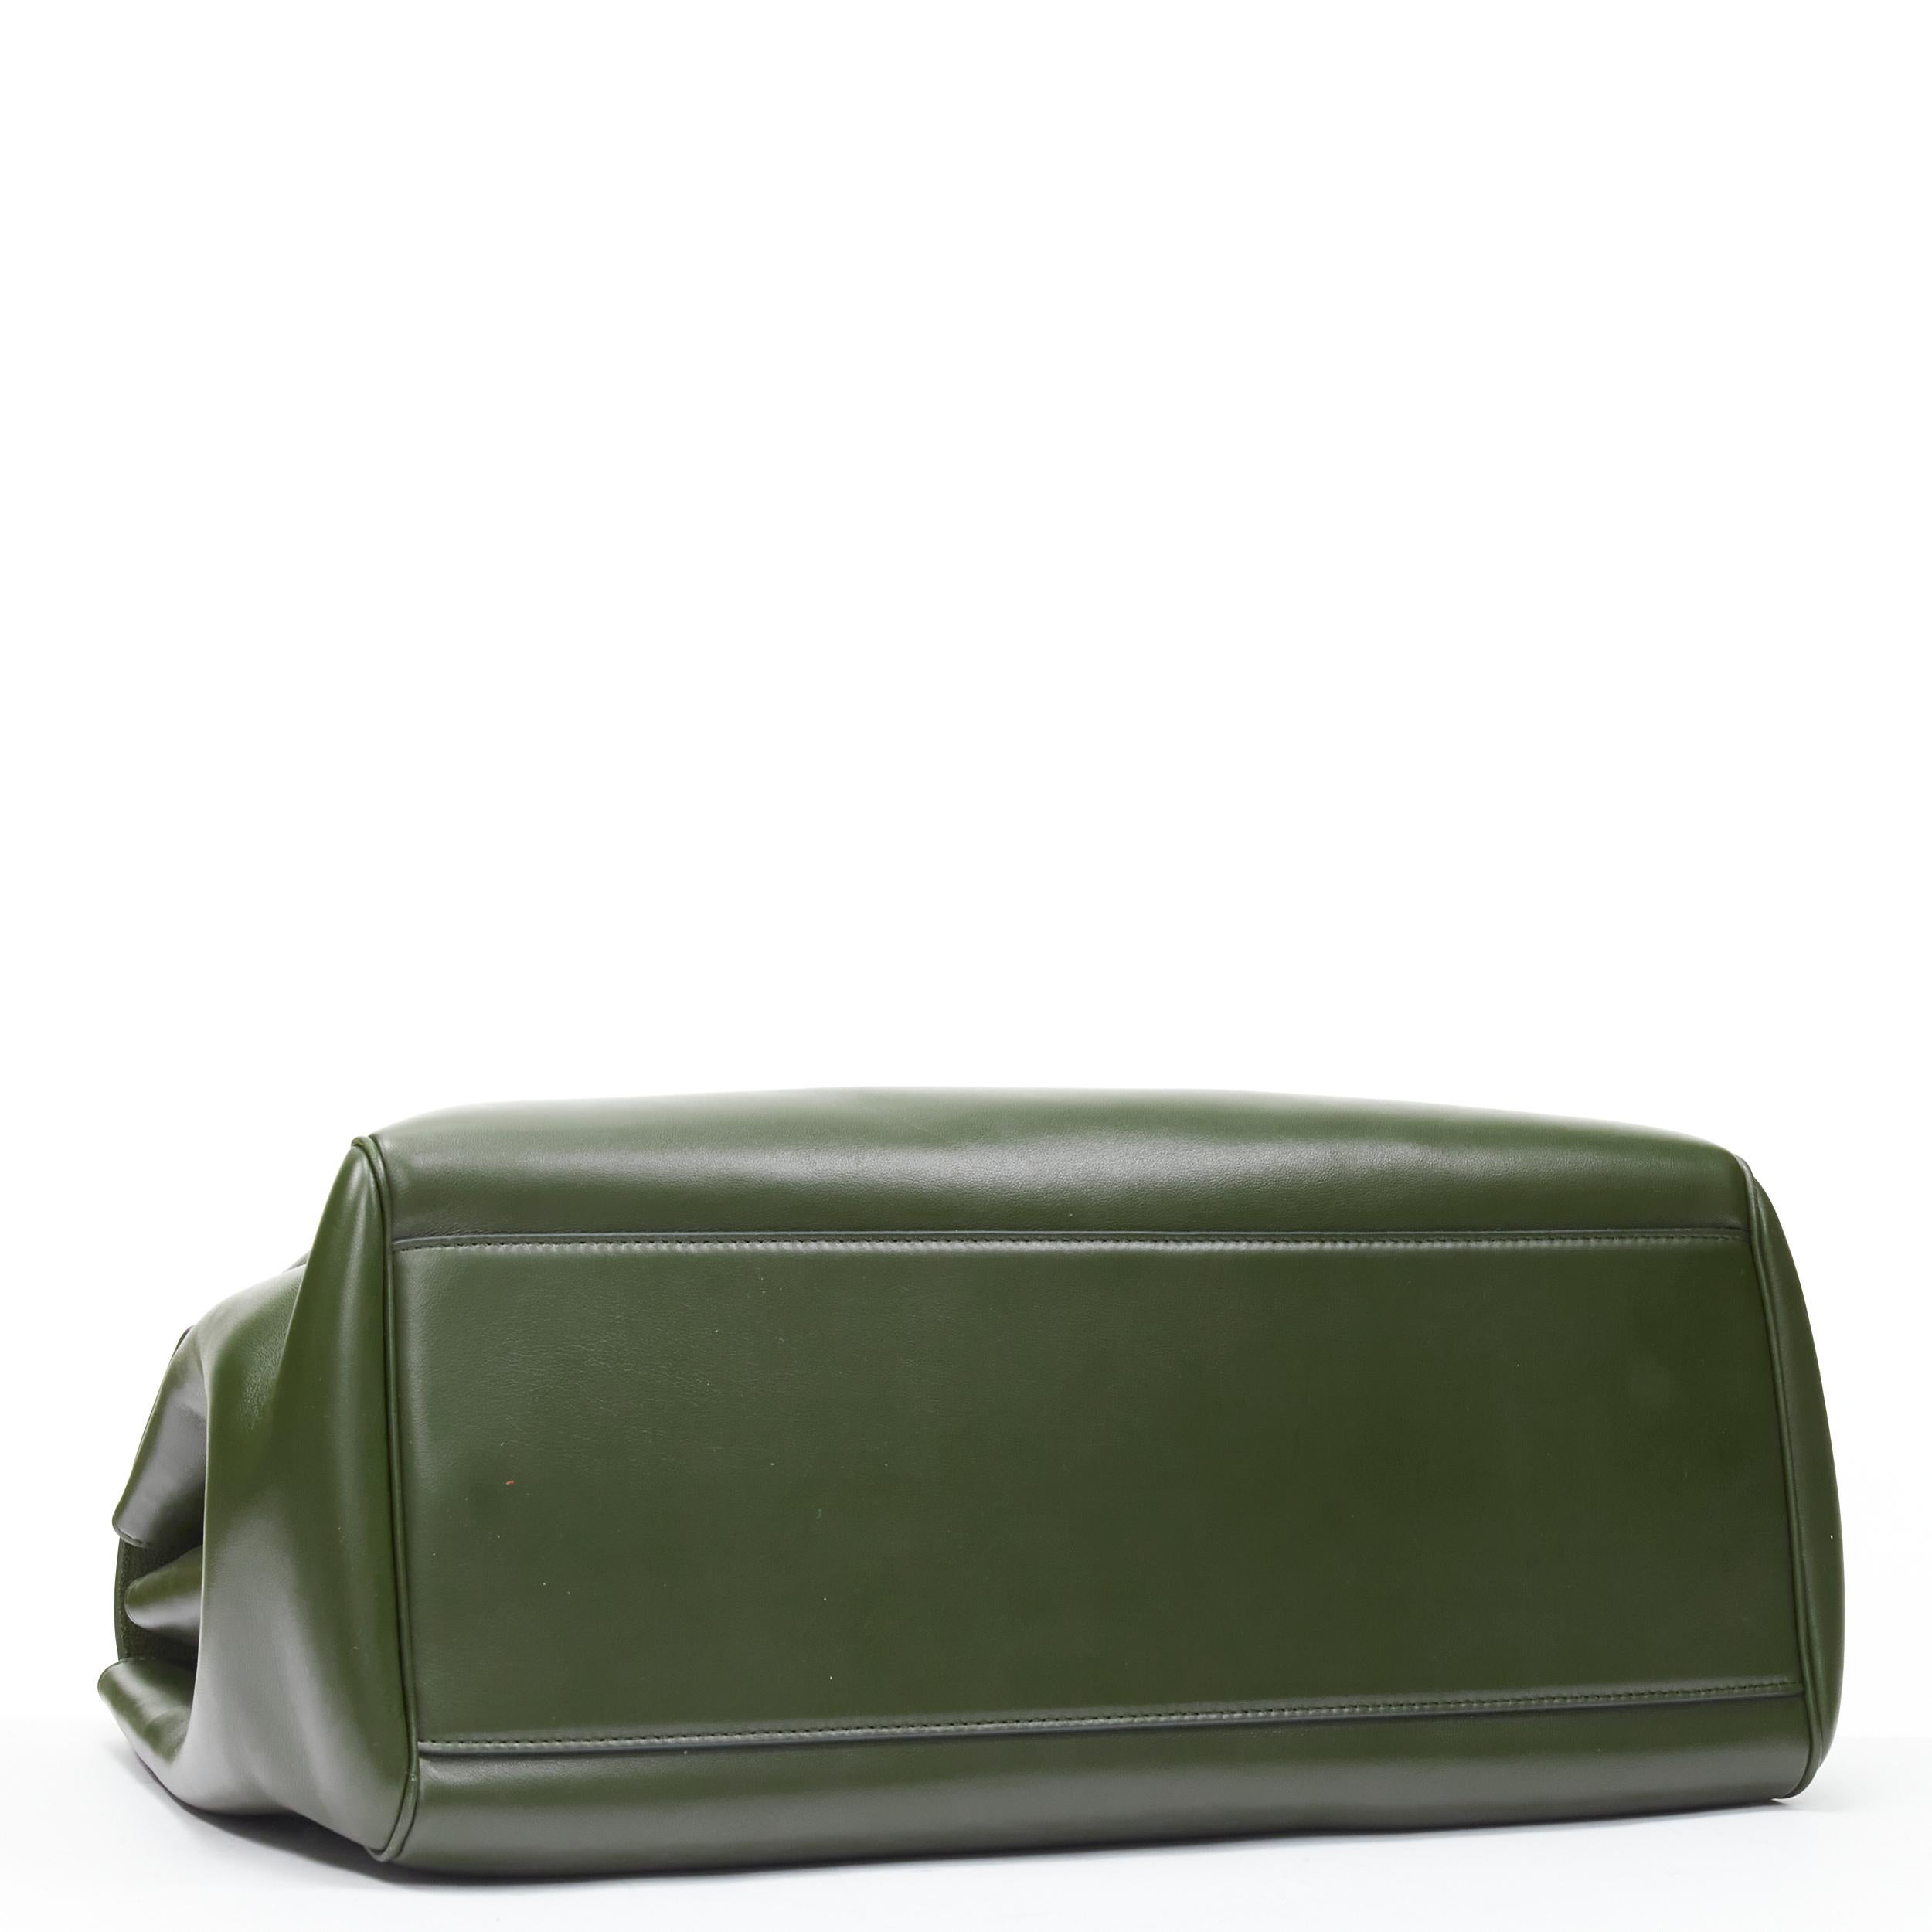 Beige CELINE Hedi Slimane Large Soft 16 bag khaki green smooth calfskin turnlock bag